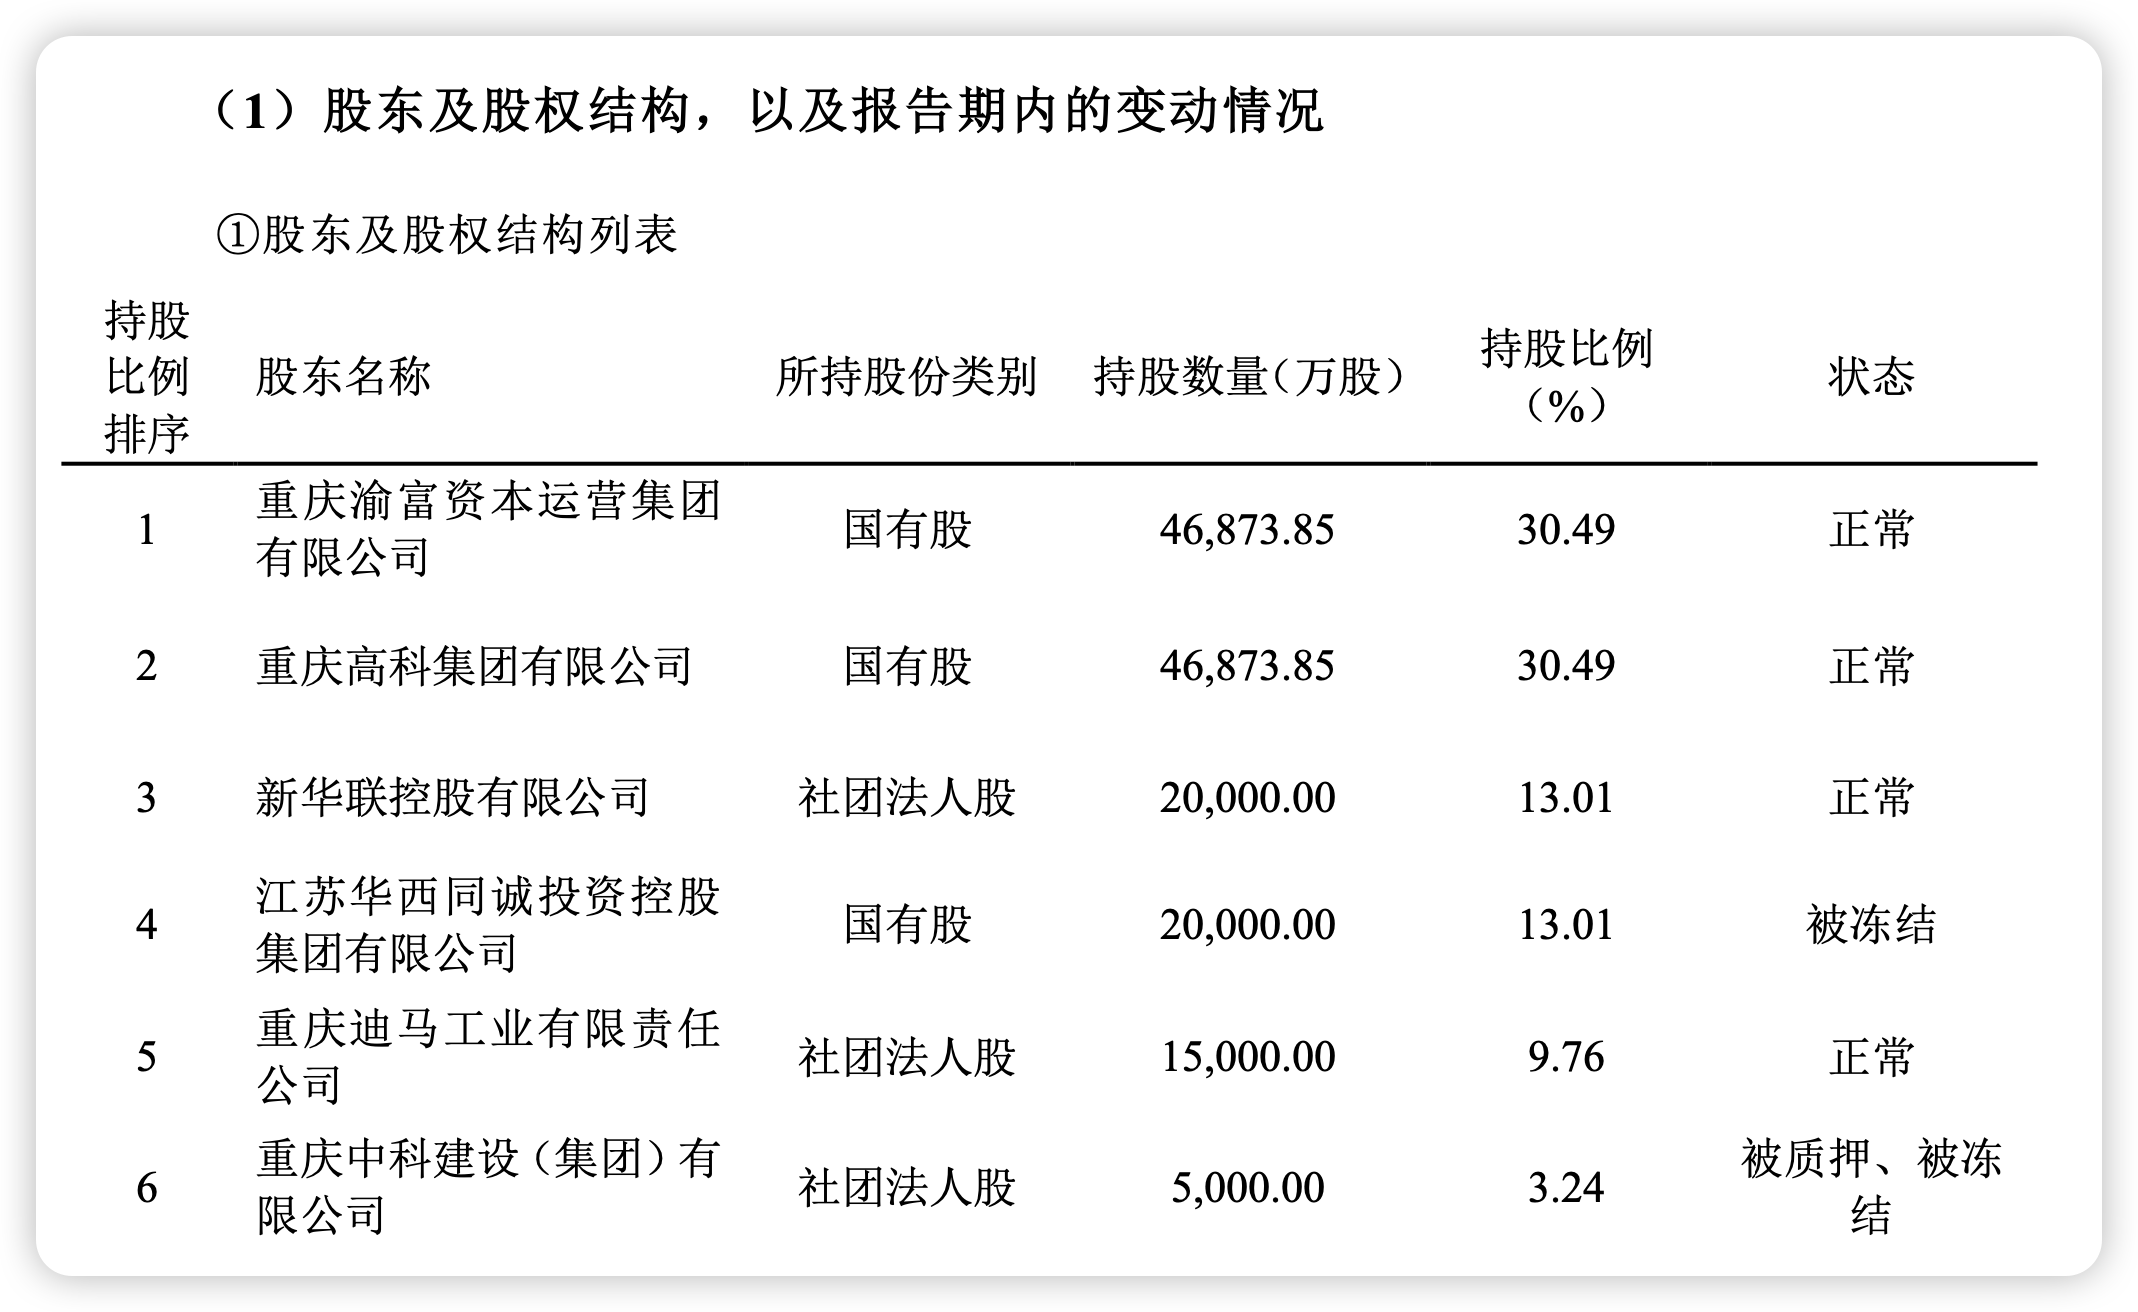 三峡人寿第五大股东清仓退场 重庆国资拟受让9.76%股权 曾经的“D等生” 能否迎转机？  第2张